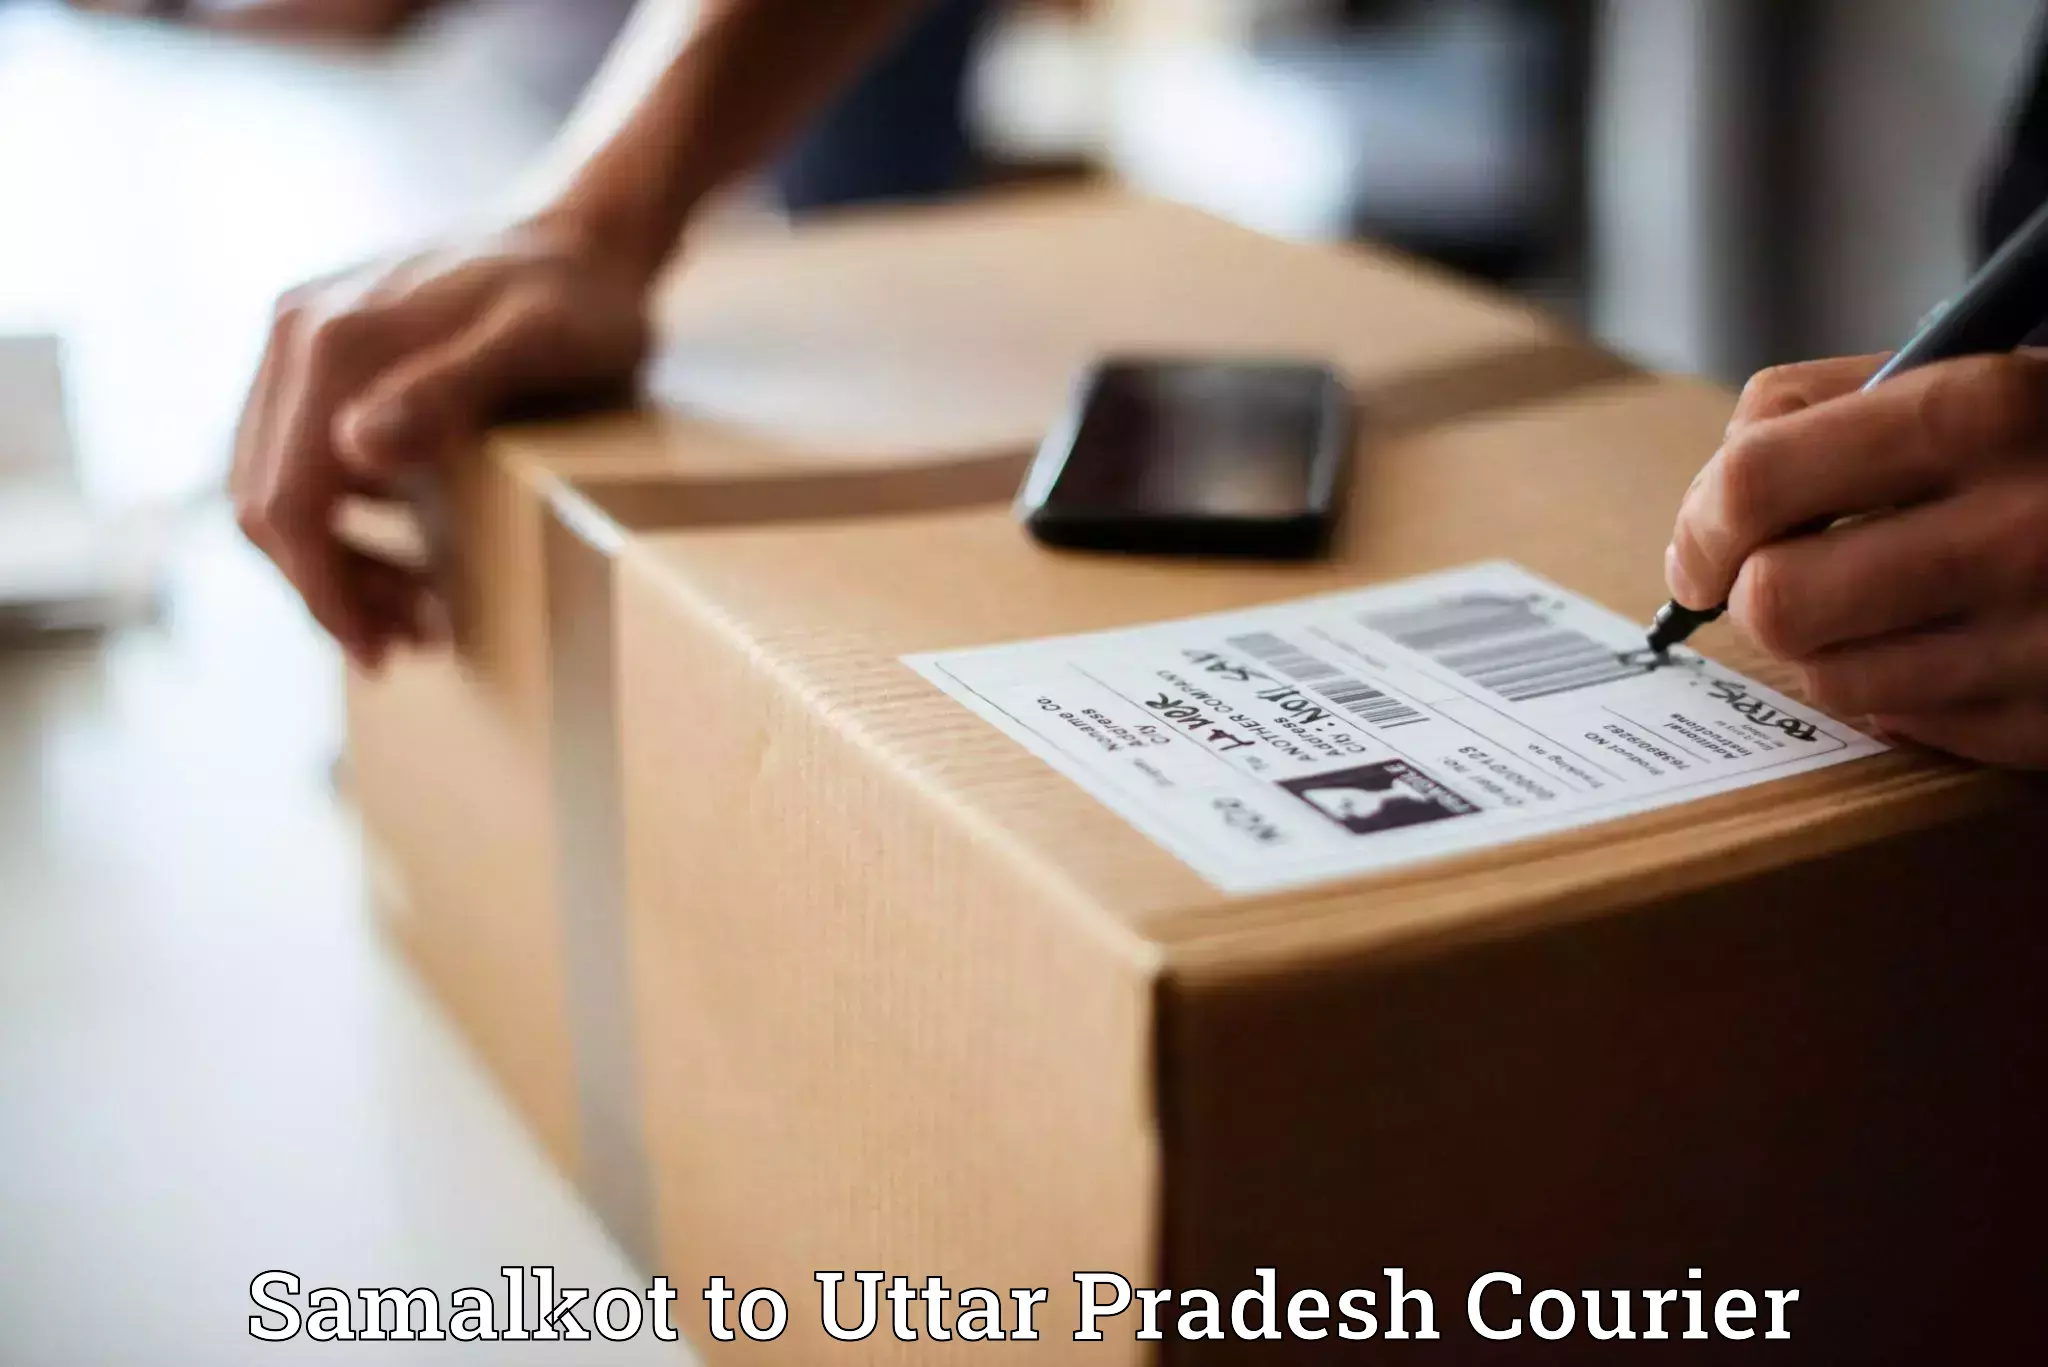 Ocean freight courier Samalkot to Uttar Pradesh